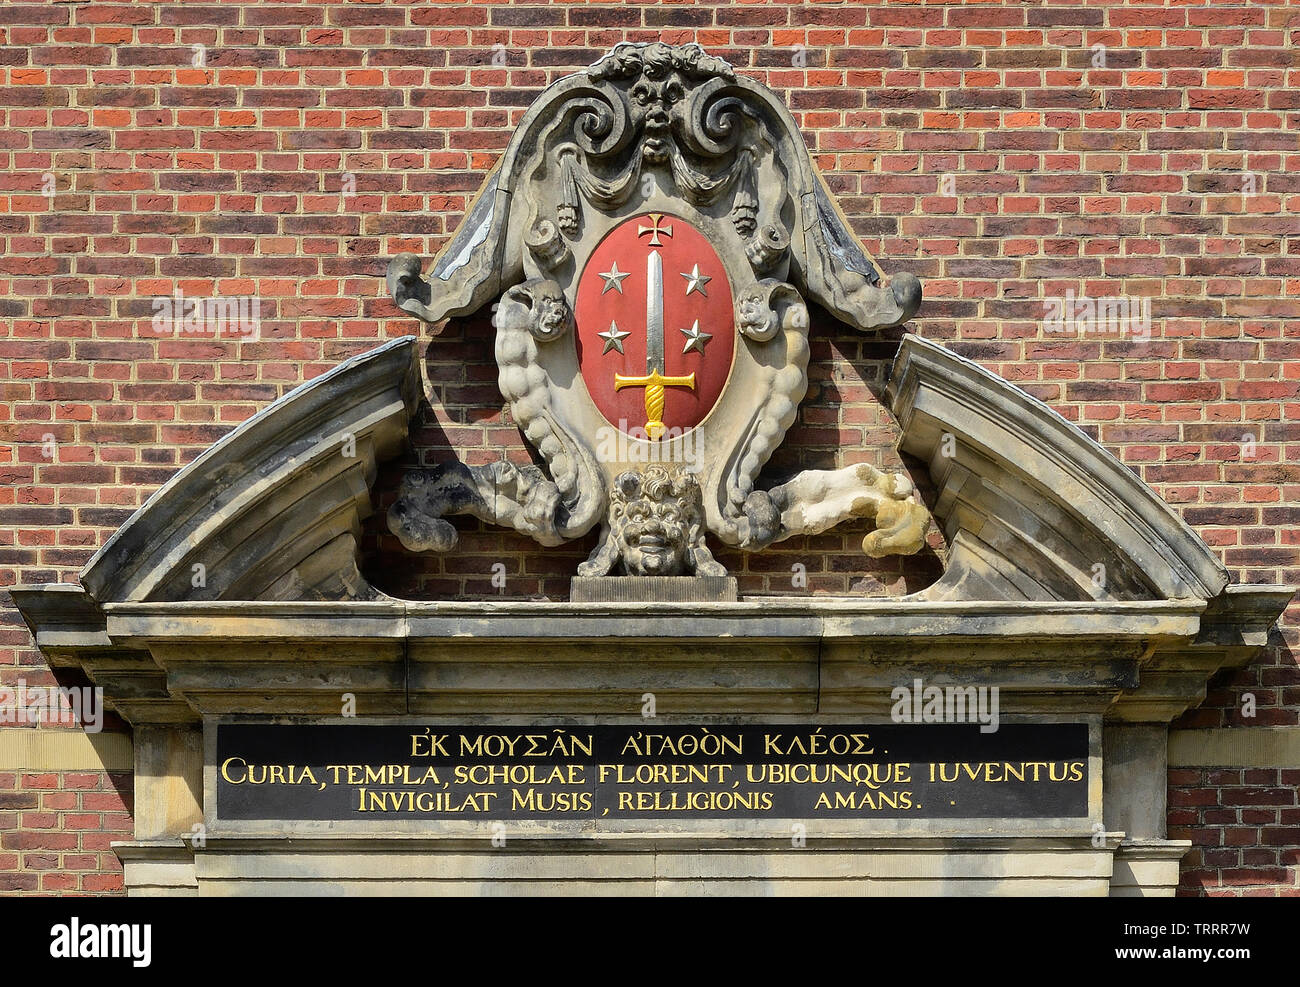 De haarlem, Holanda - Agosto 06, 2013: ornamentales frontón de la puerta de entrada a la ciudad de Haarlem, escudo de armas en un antiguo hogar de los hombres, ahora Frans Hals m Foto de stock